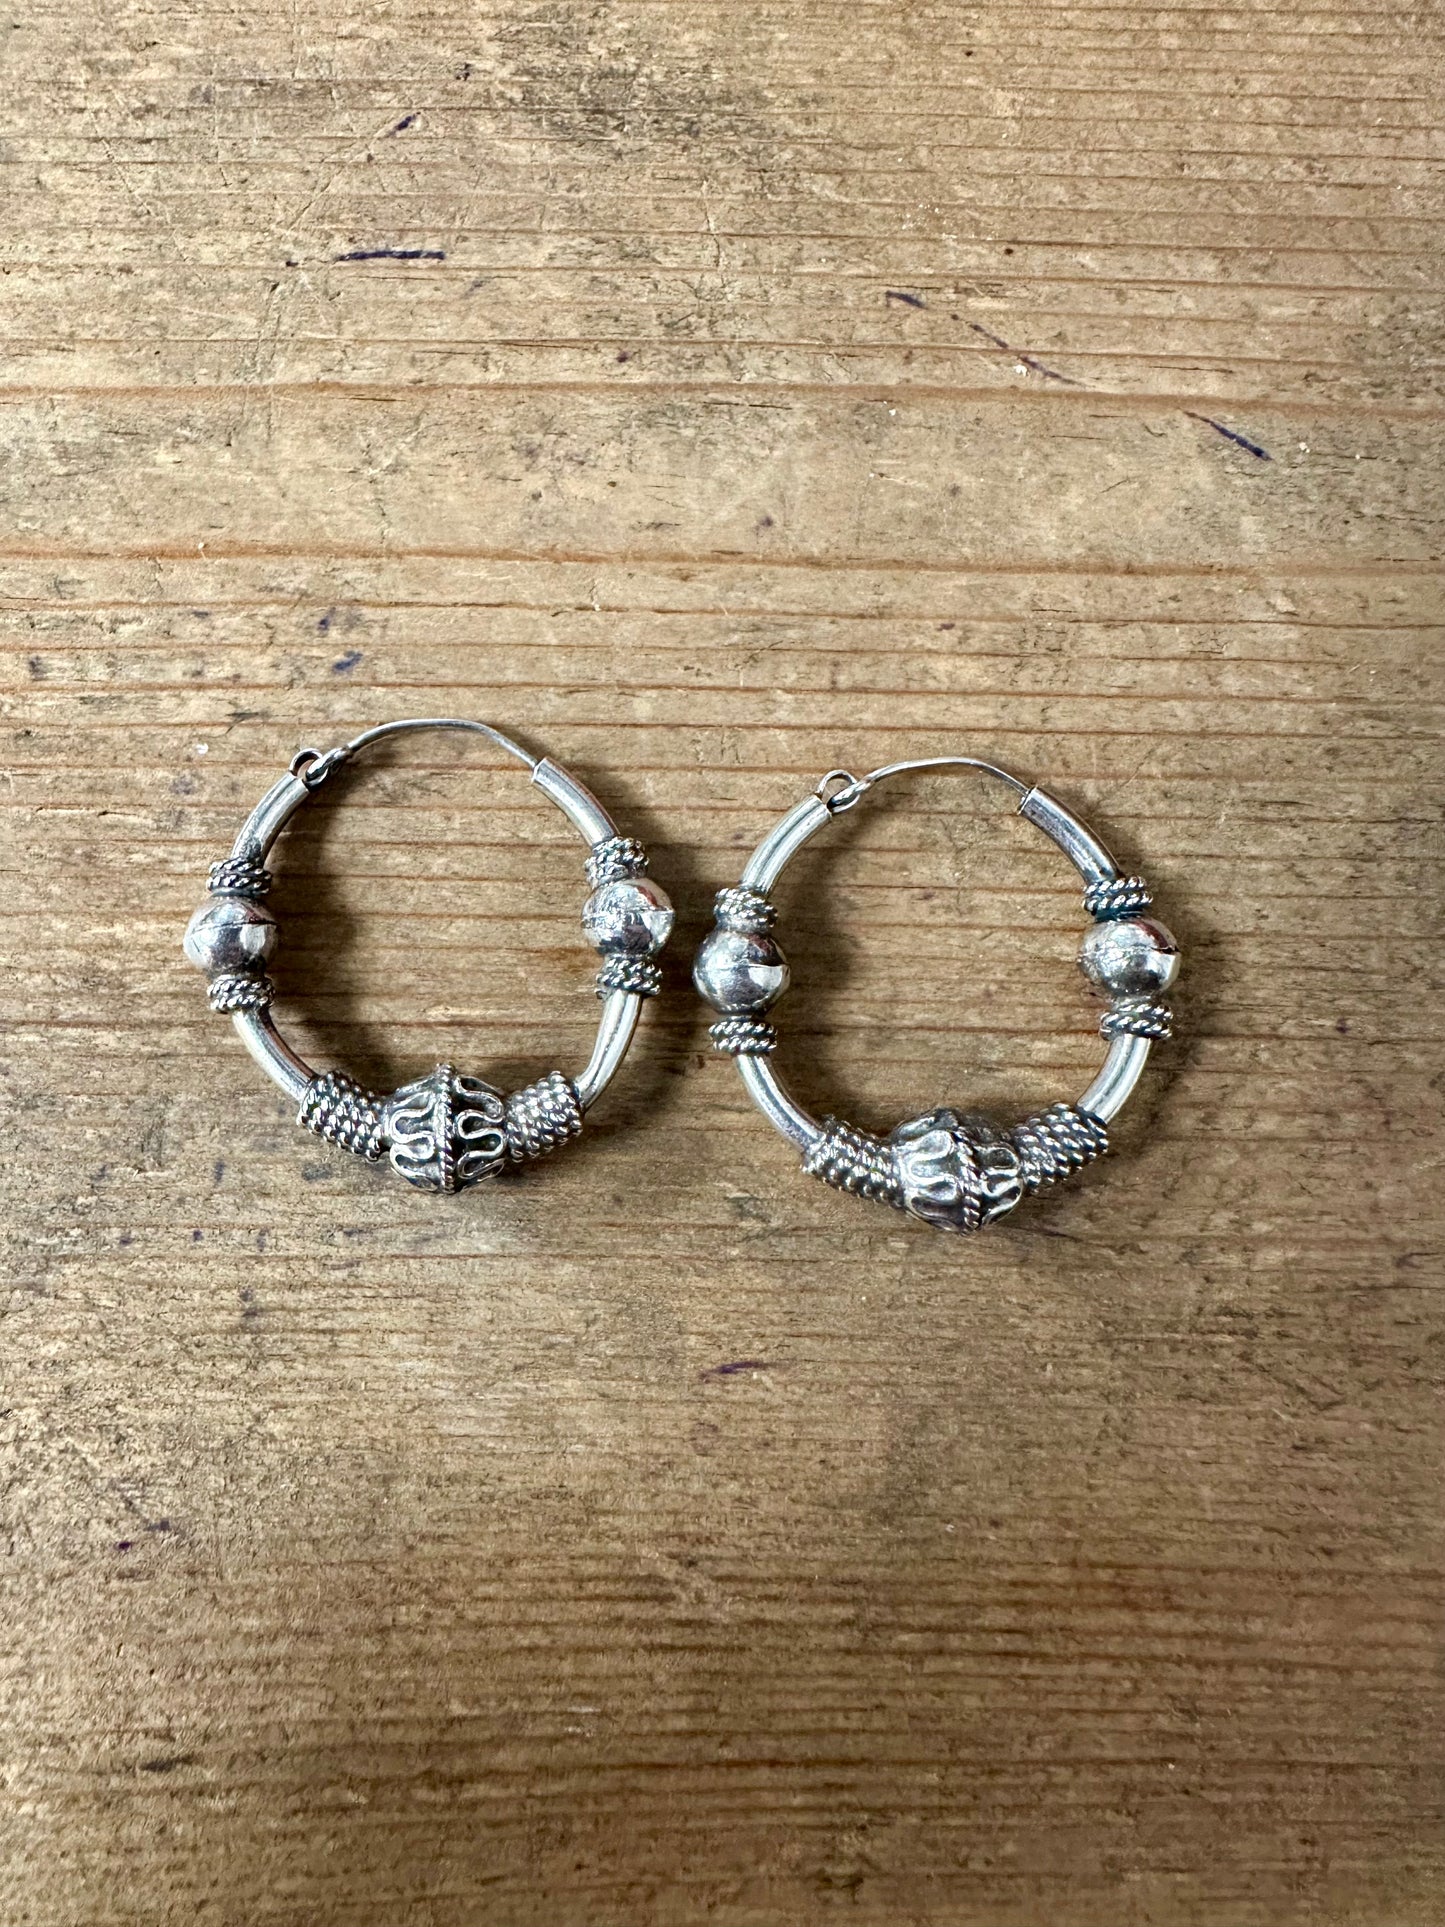 Vintage Boho Ball Tribal Hoops 925 Silver Earrings